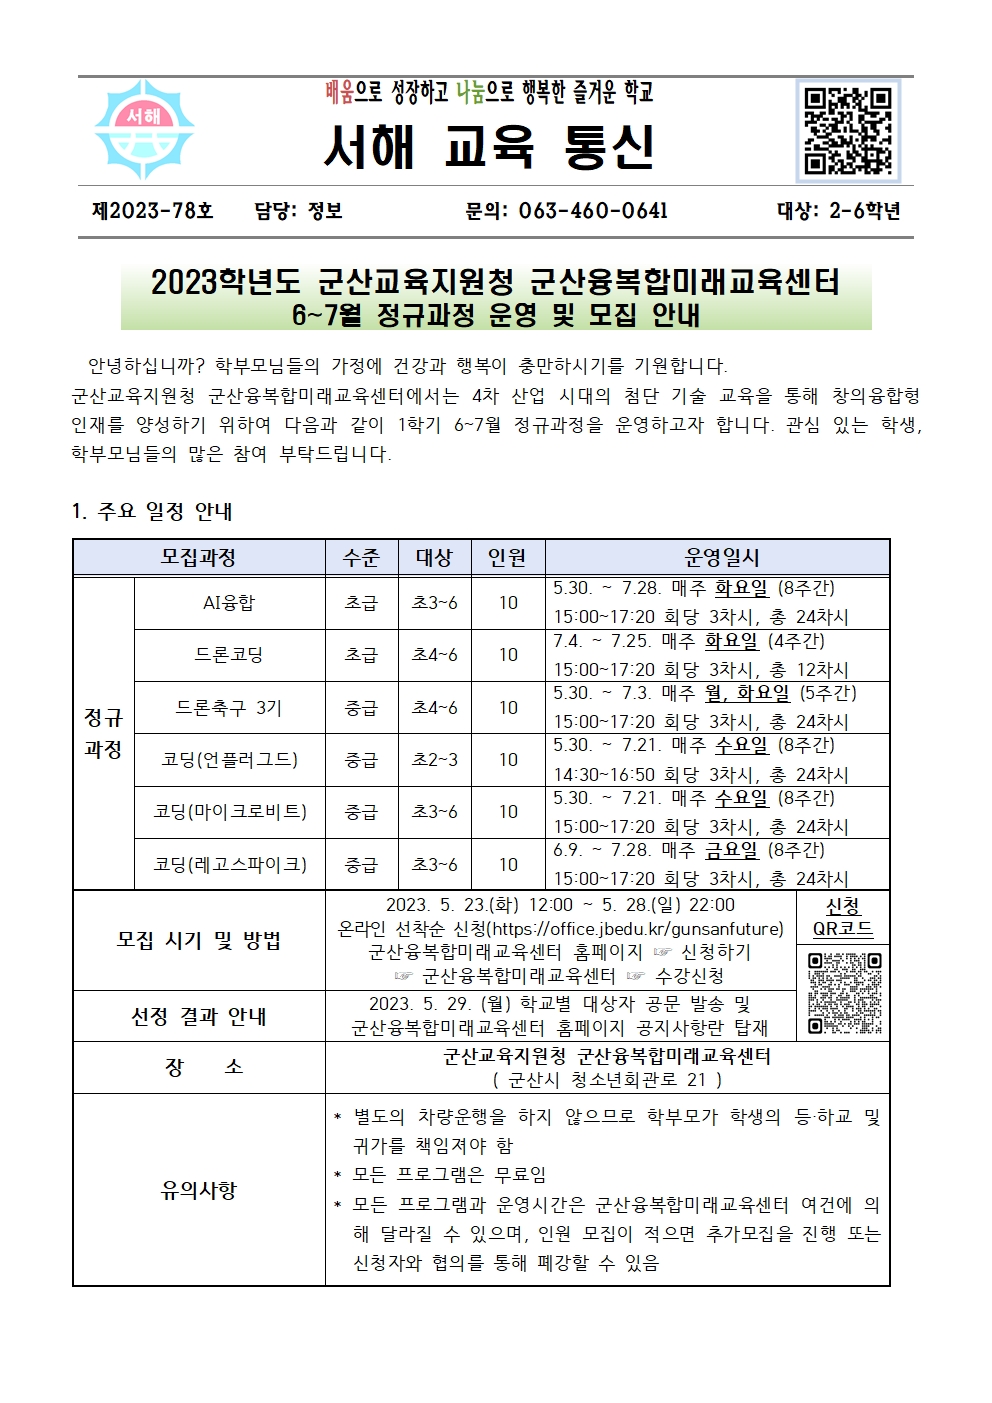 군산융복합미래교육센터 6~7월 정규과정 학생 모집 가정통신문001